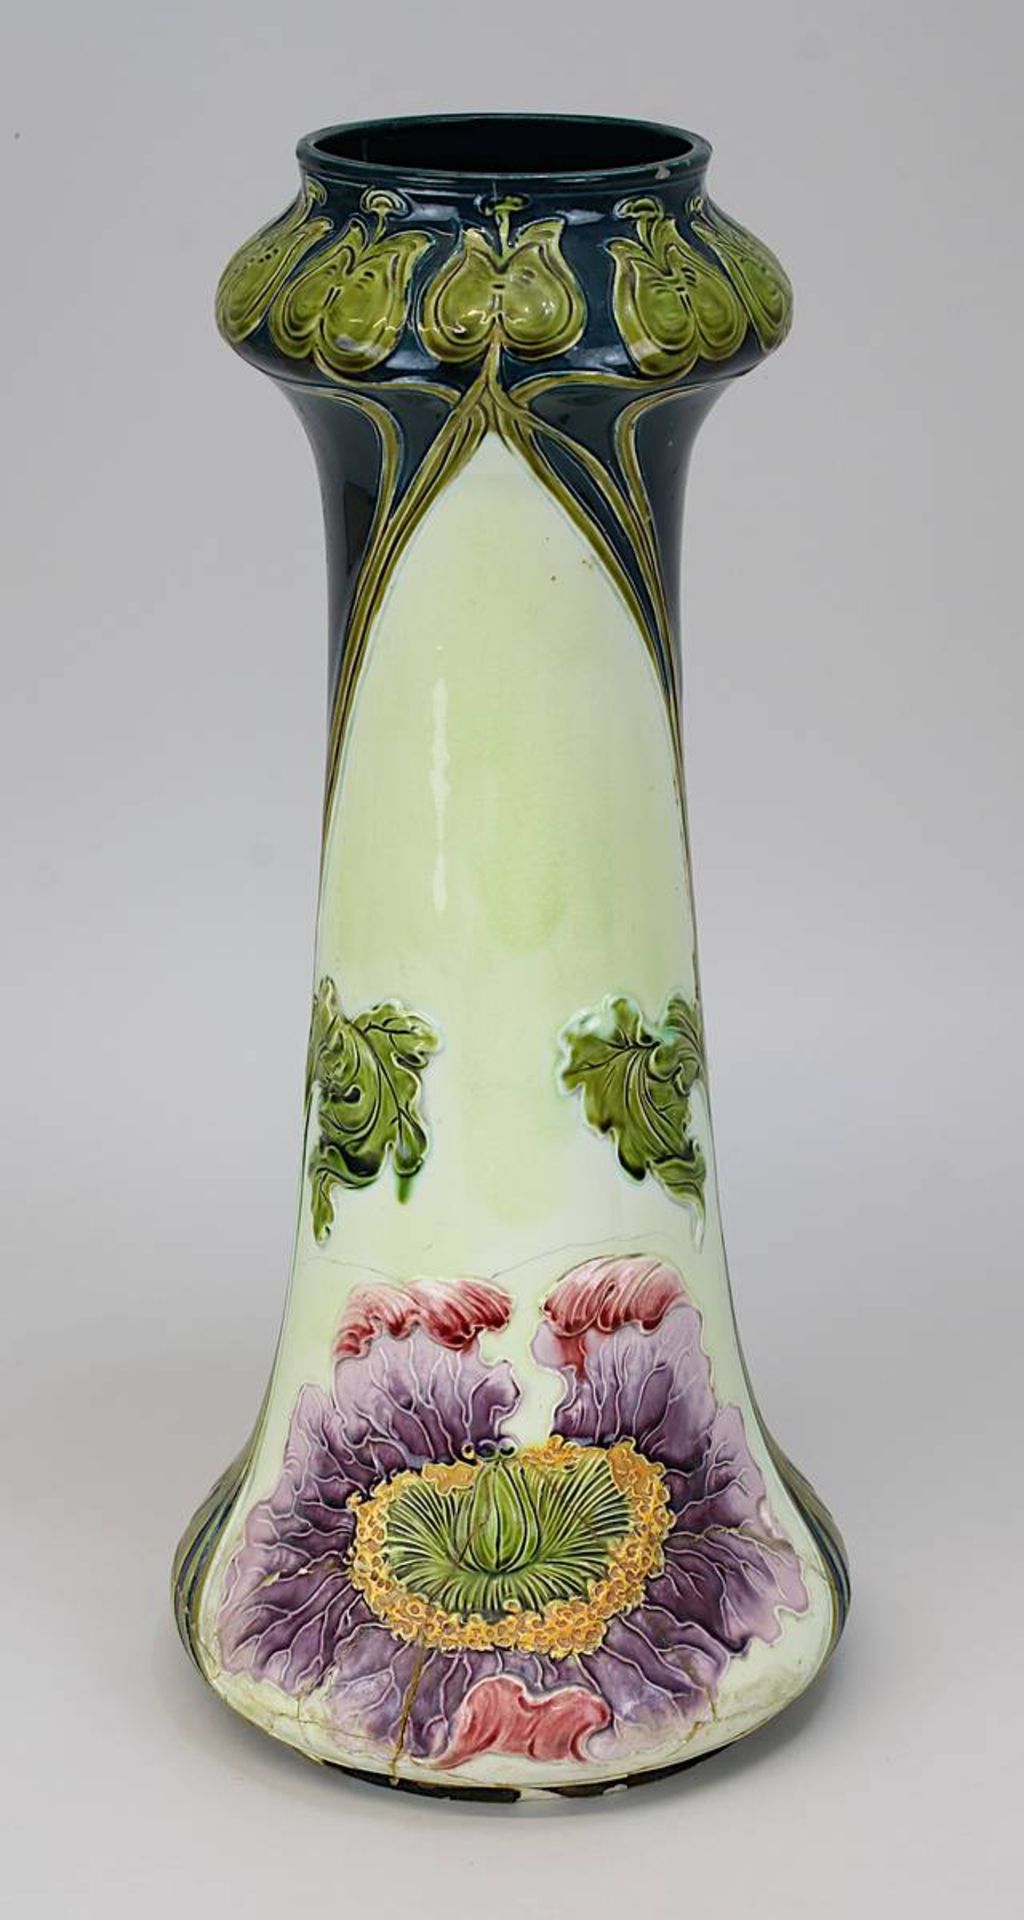 Jugendstil-Keramikvase mit Blumendekor, Keramik heller Scherben, Außenwandung mit Floral - Image 2 of 2